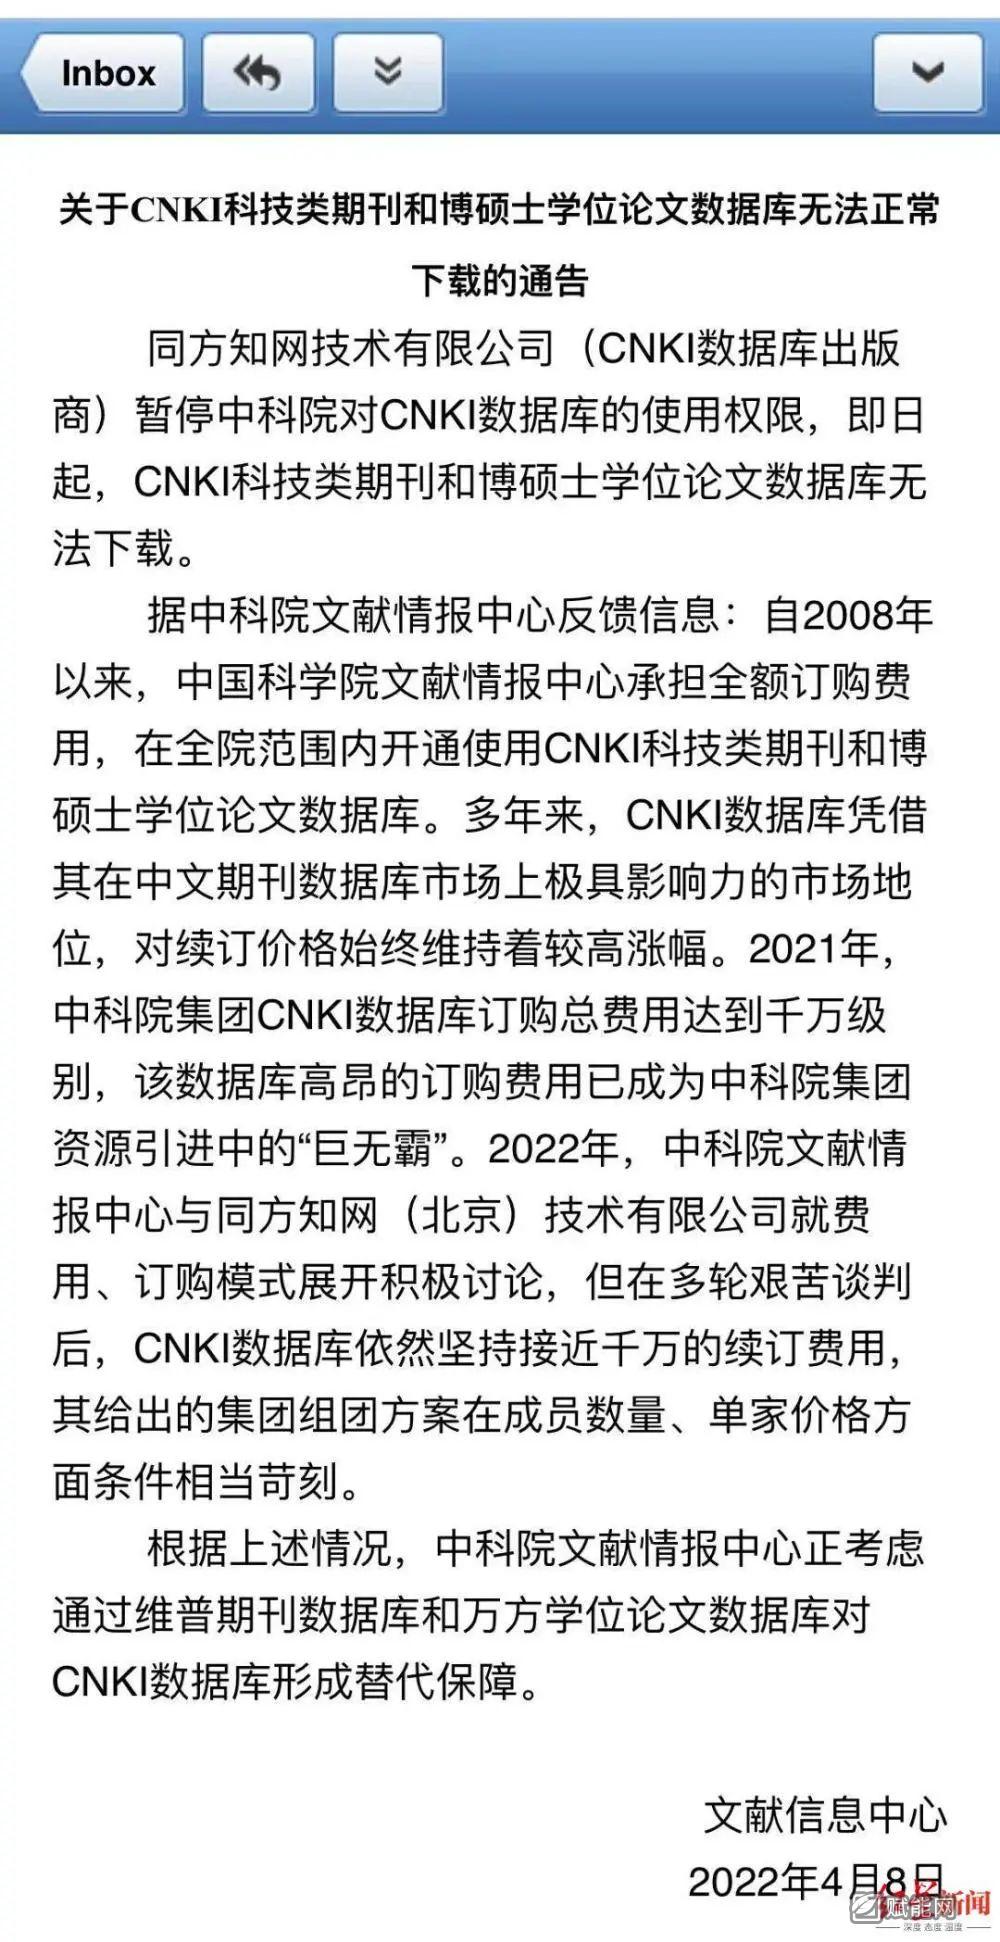 中国知网已暂停中国科学院对CNKI数据库的使用权限